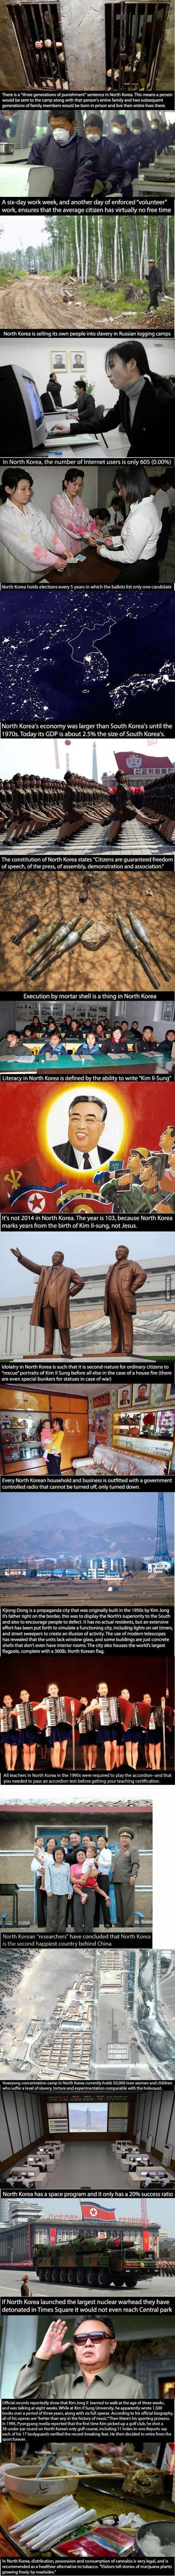 Galerija: Život u Sjevernoj Koreji